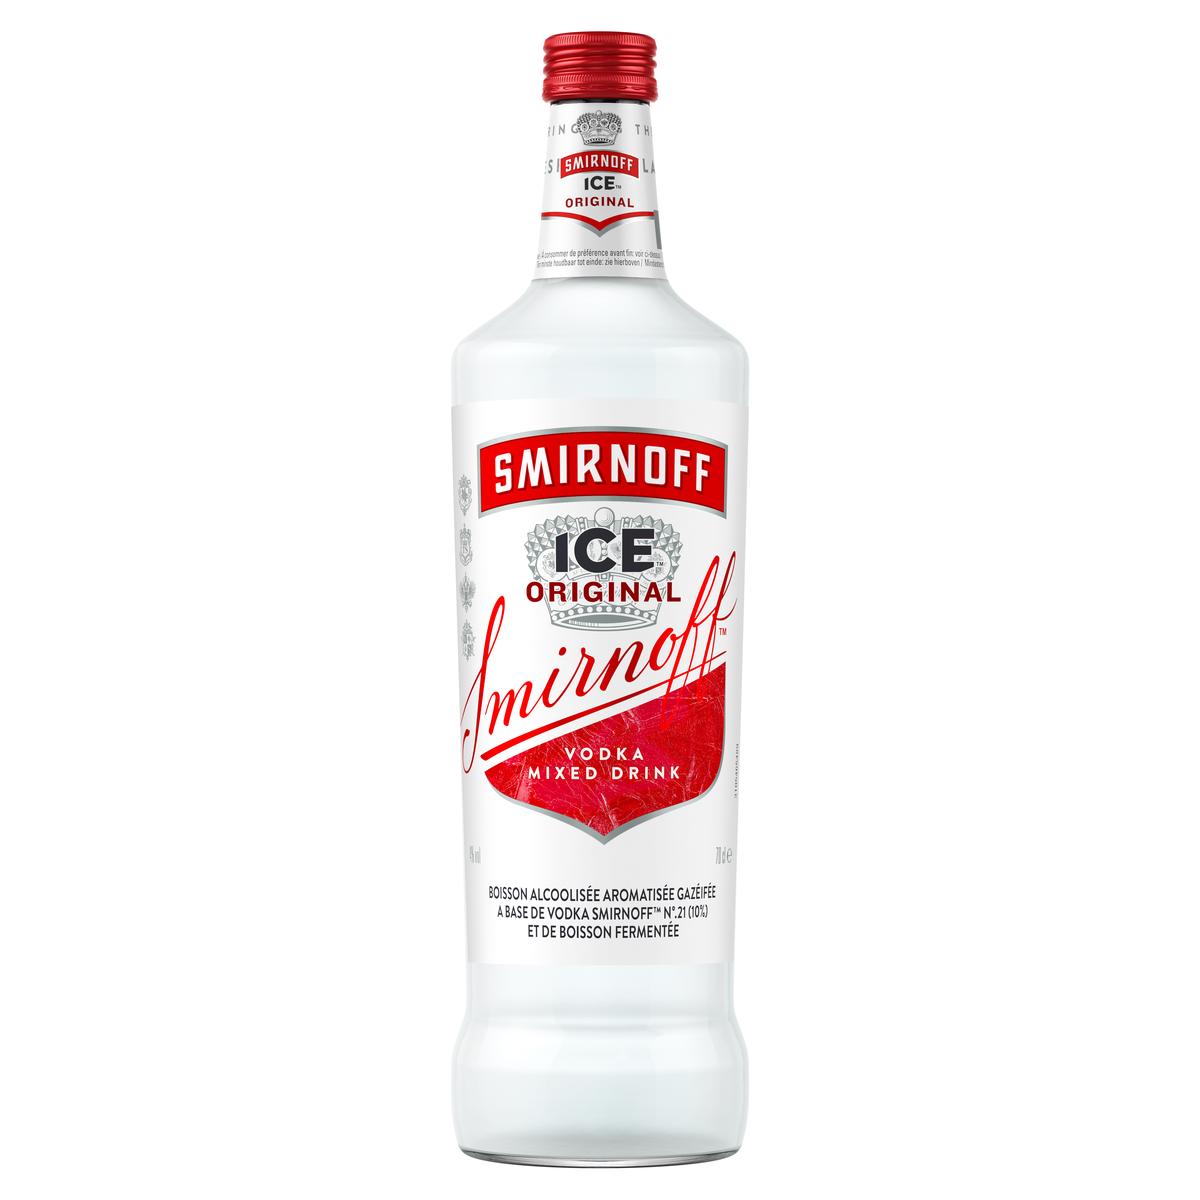 Acheter Smirnoff Ice Boisson alcoolisée aromatisée à base de vodka 4°